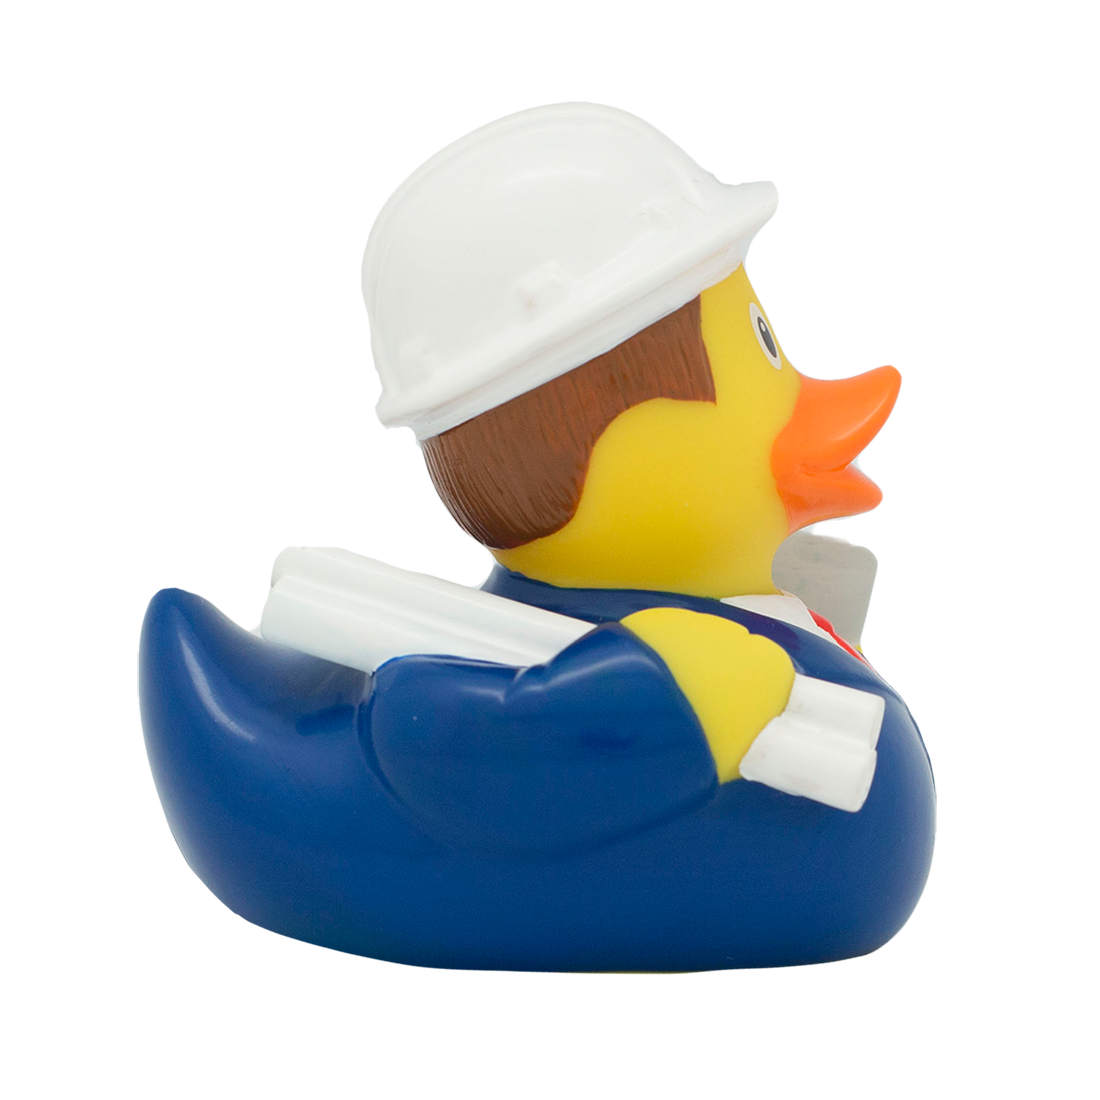 Duck Engineer